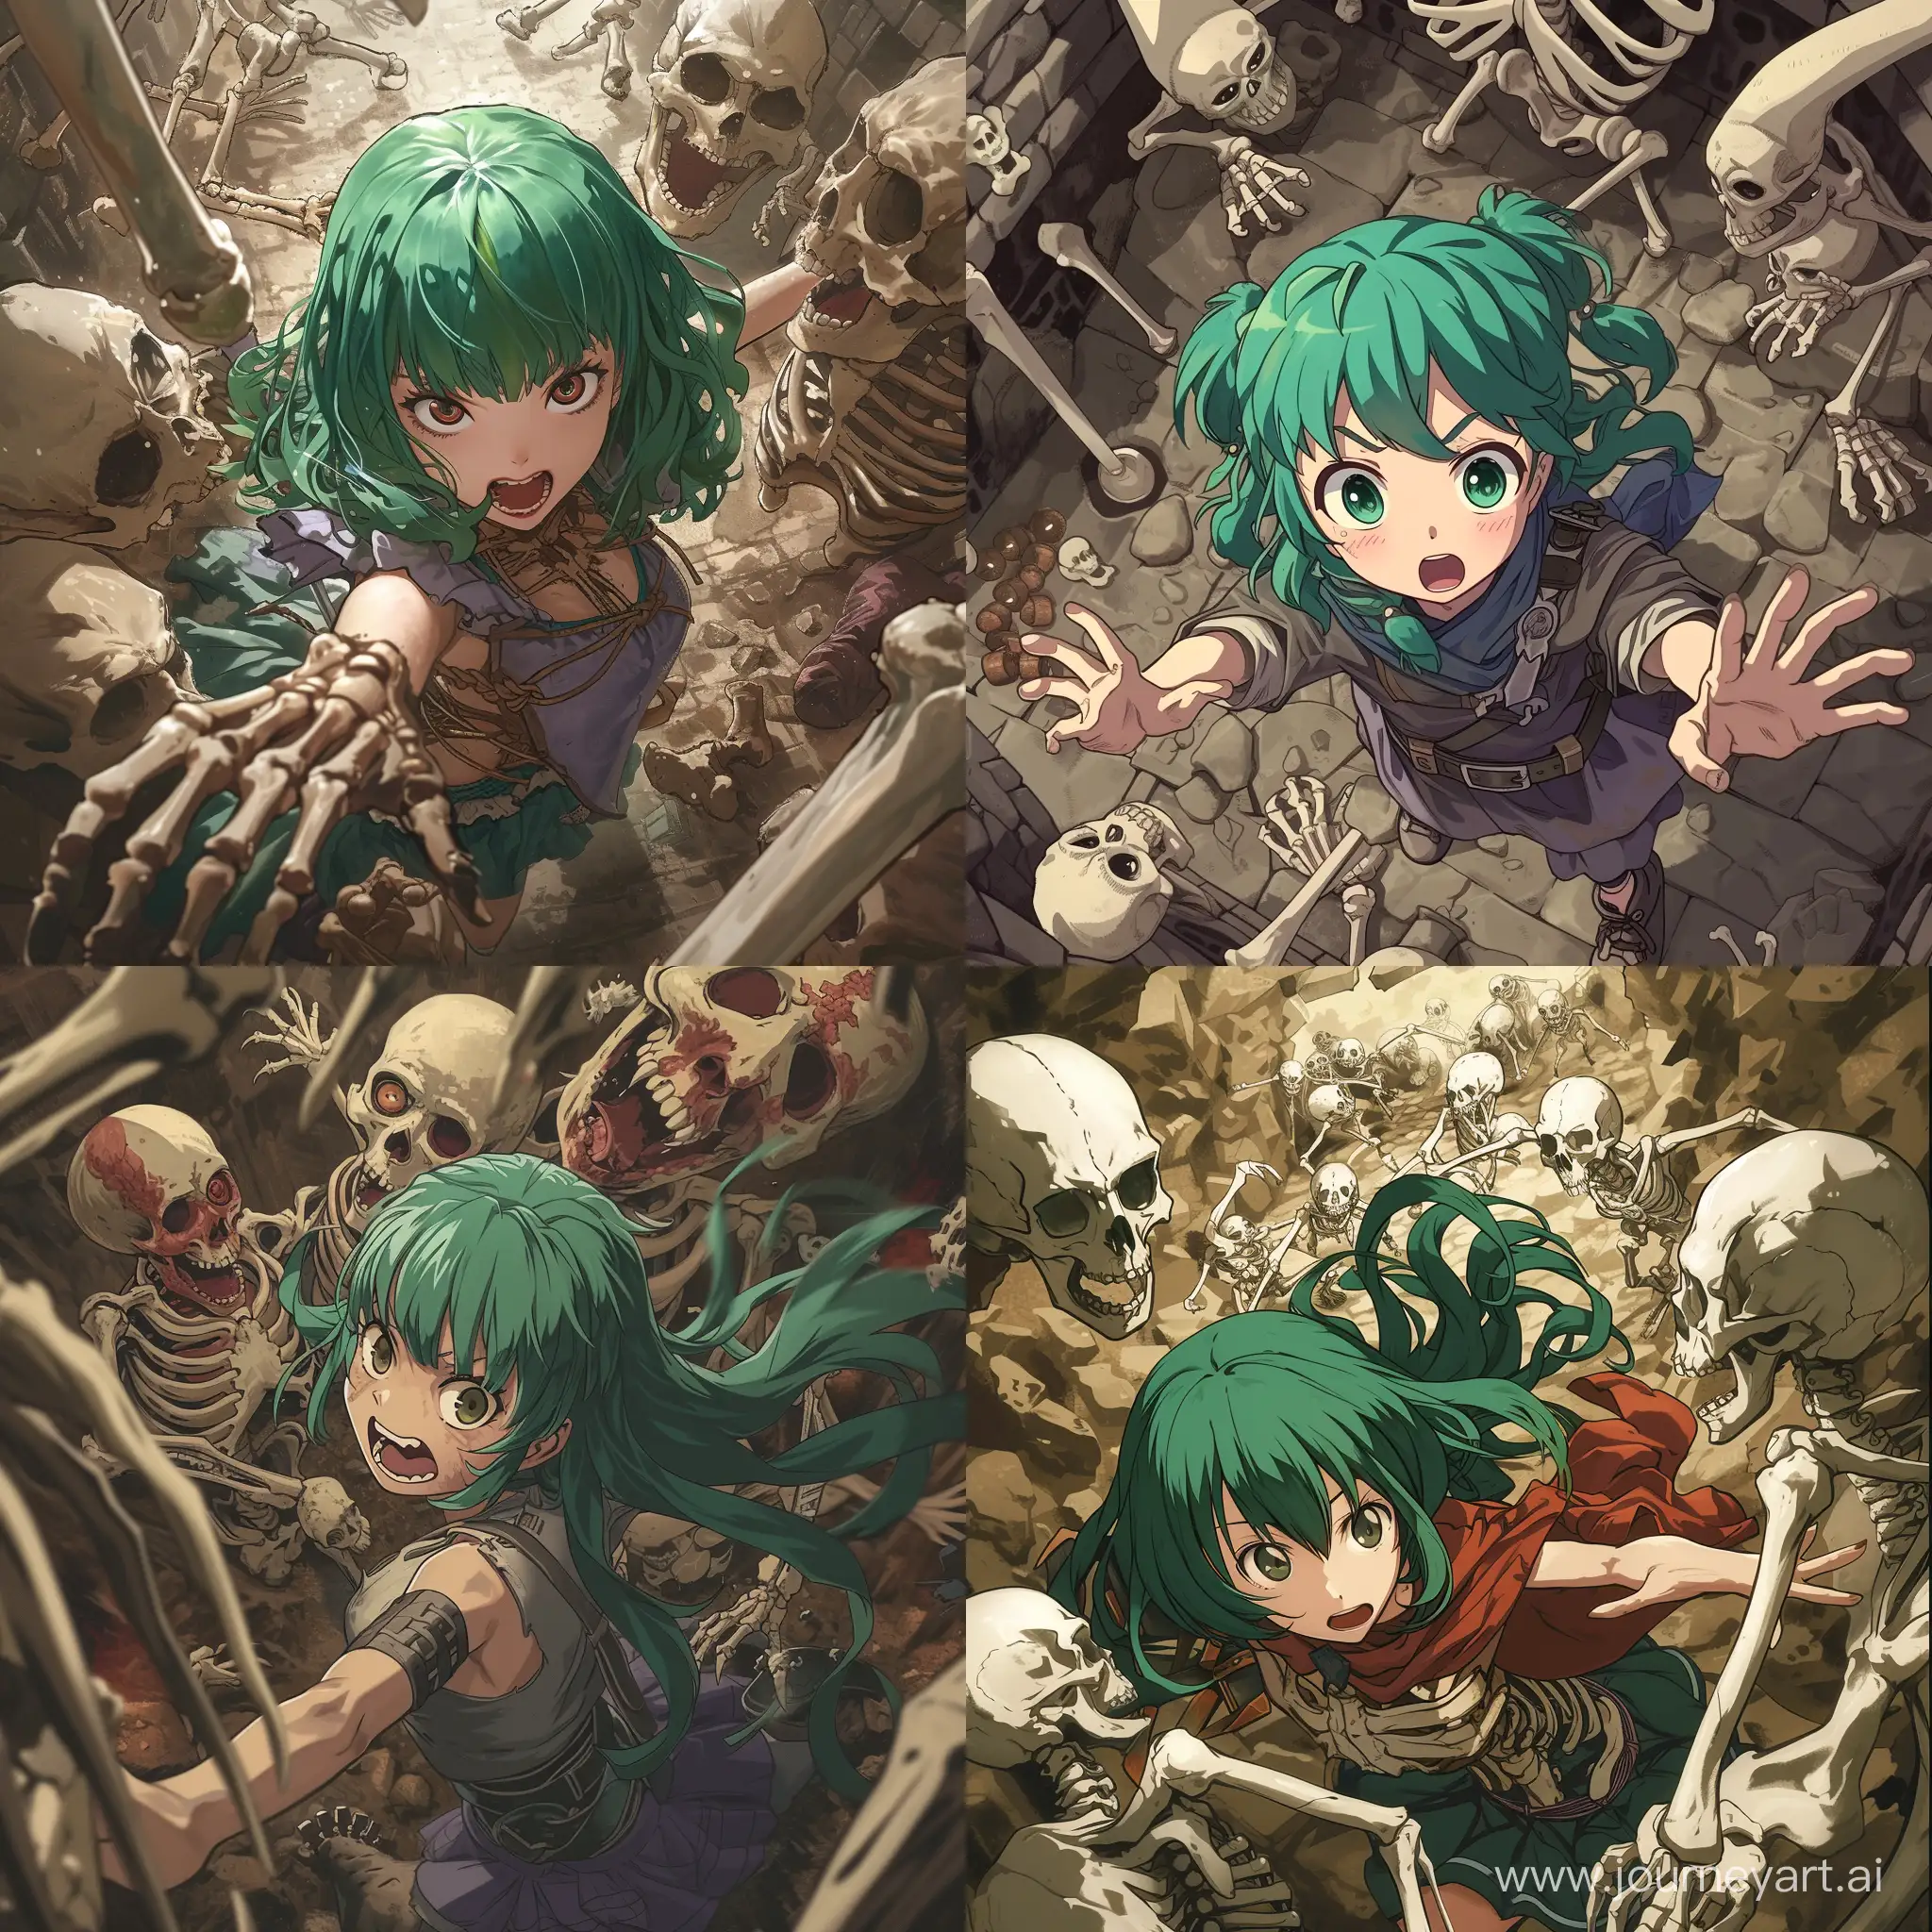 Аниме девушка с зелёными волосами является авантюристом и находится в тёмном подземелье где сражается с ордой скелетов и монстров